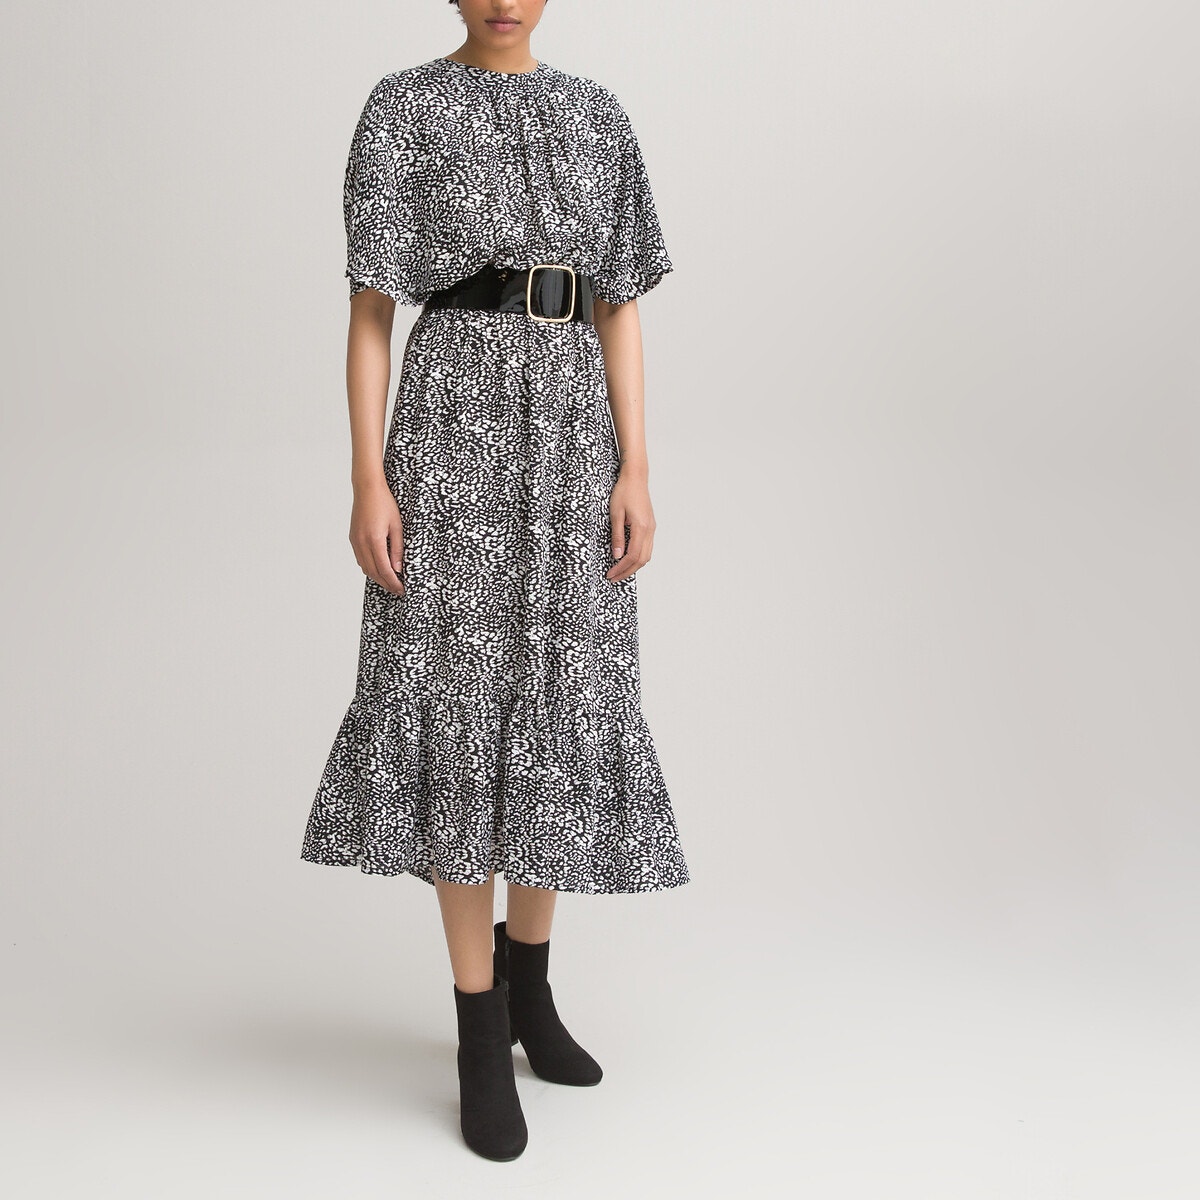 ΓΥΝΑΙΚΑ | Φορέματα | Κοντά μανίκια Μακρύ φόρεμα με animal print